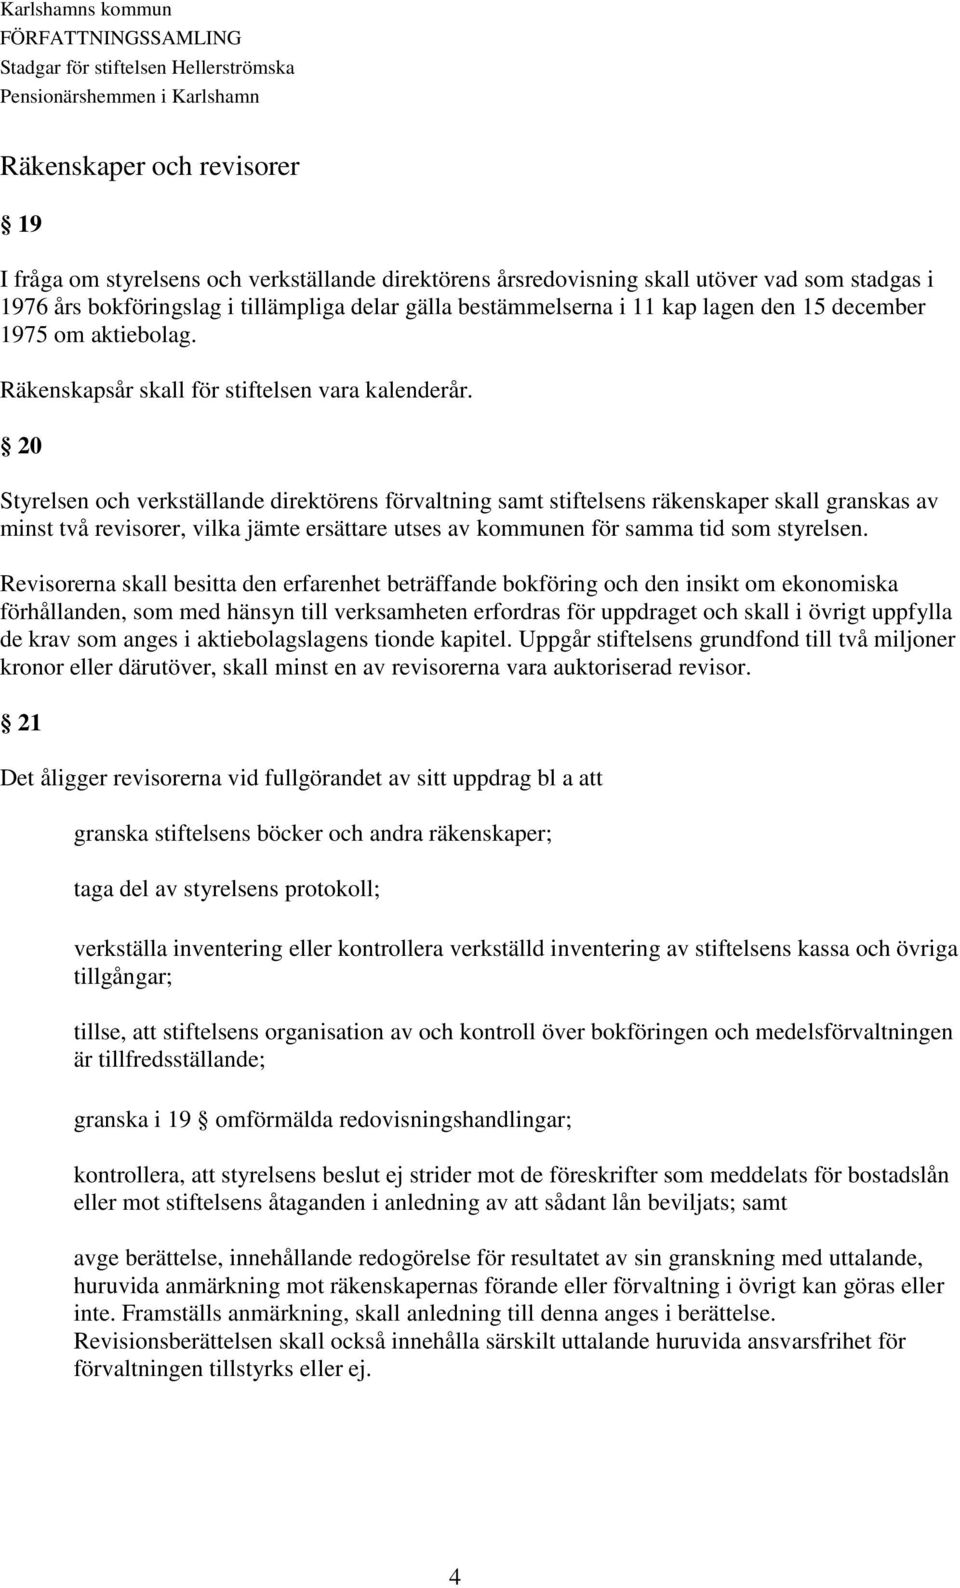 Stadgar för stiftelsen Hellerströmska pensionärshemmen i Karlshamn ...